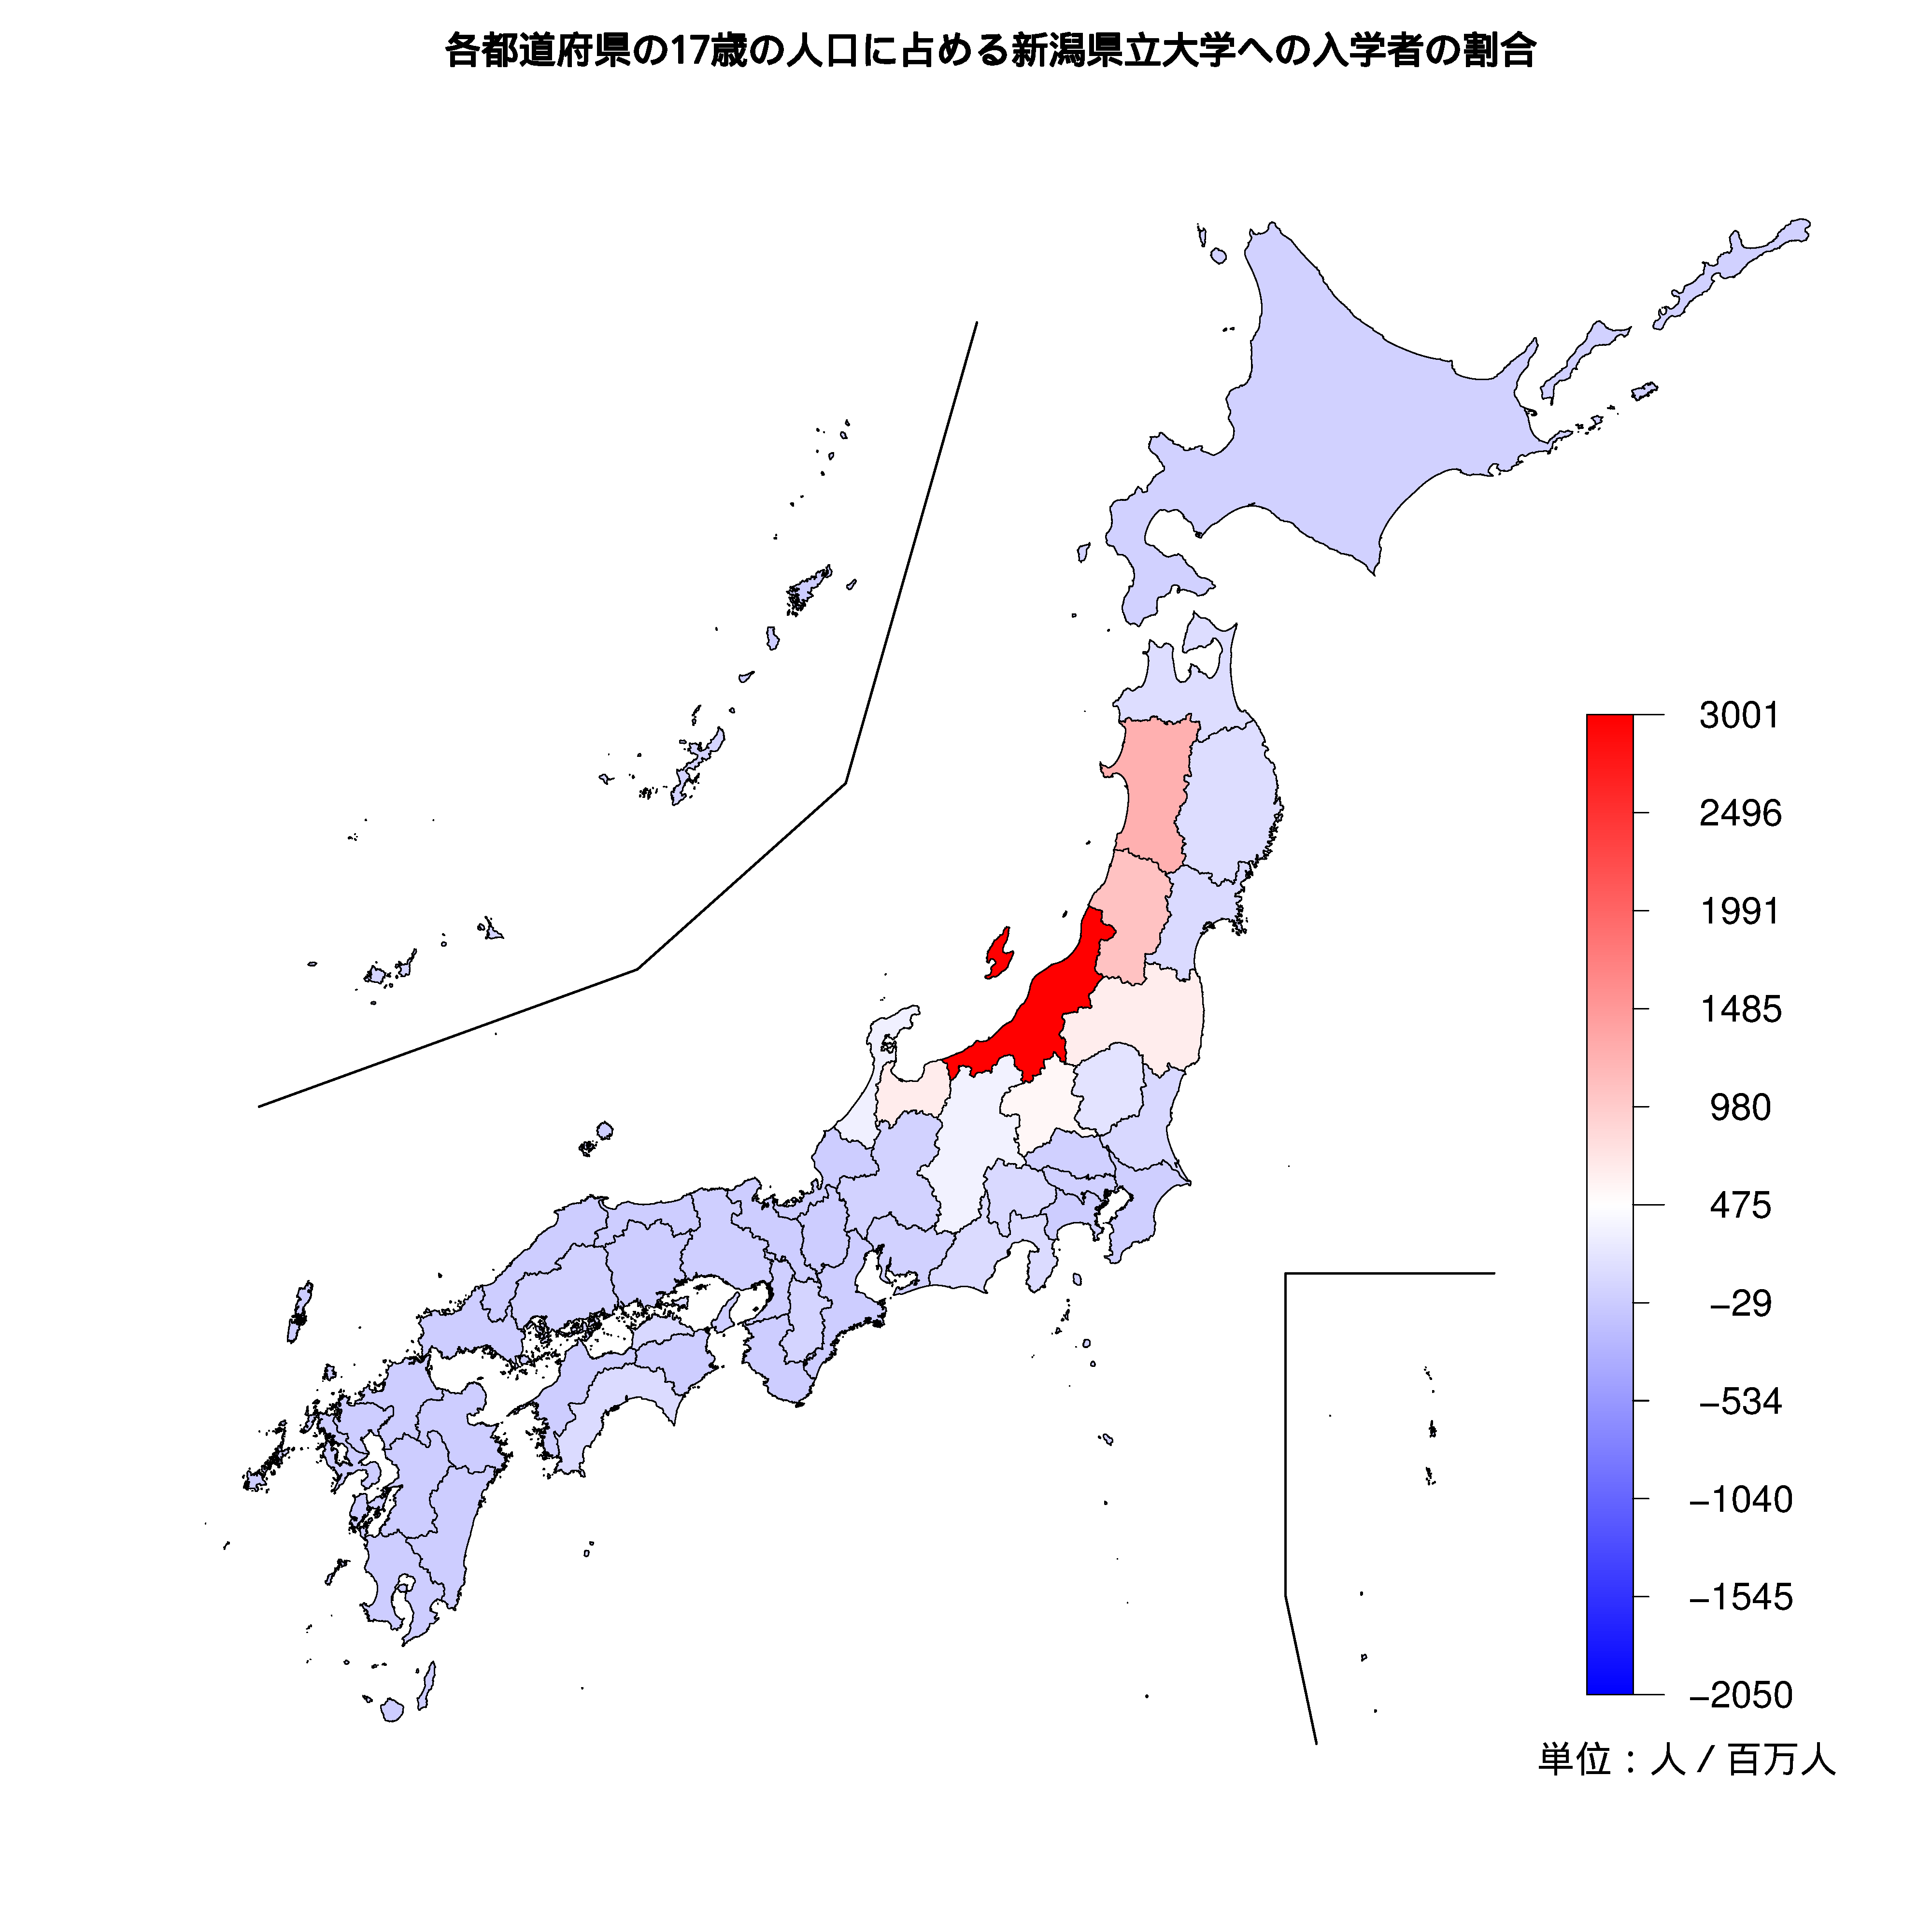 新潟県立大学への入学者が多い都道府県の色分け地図